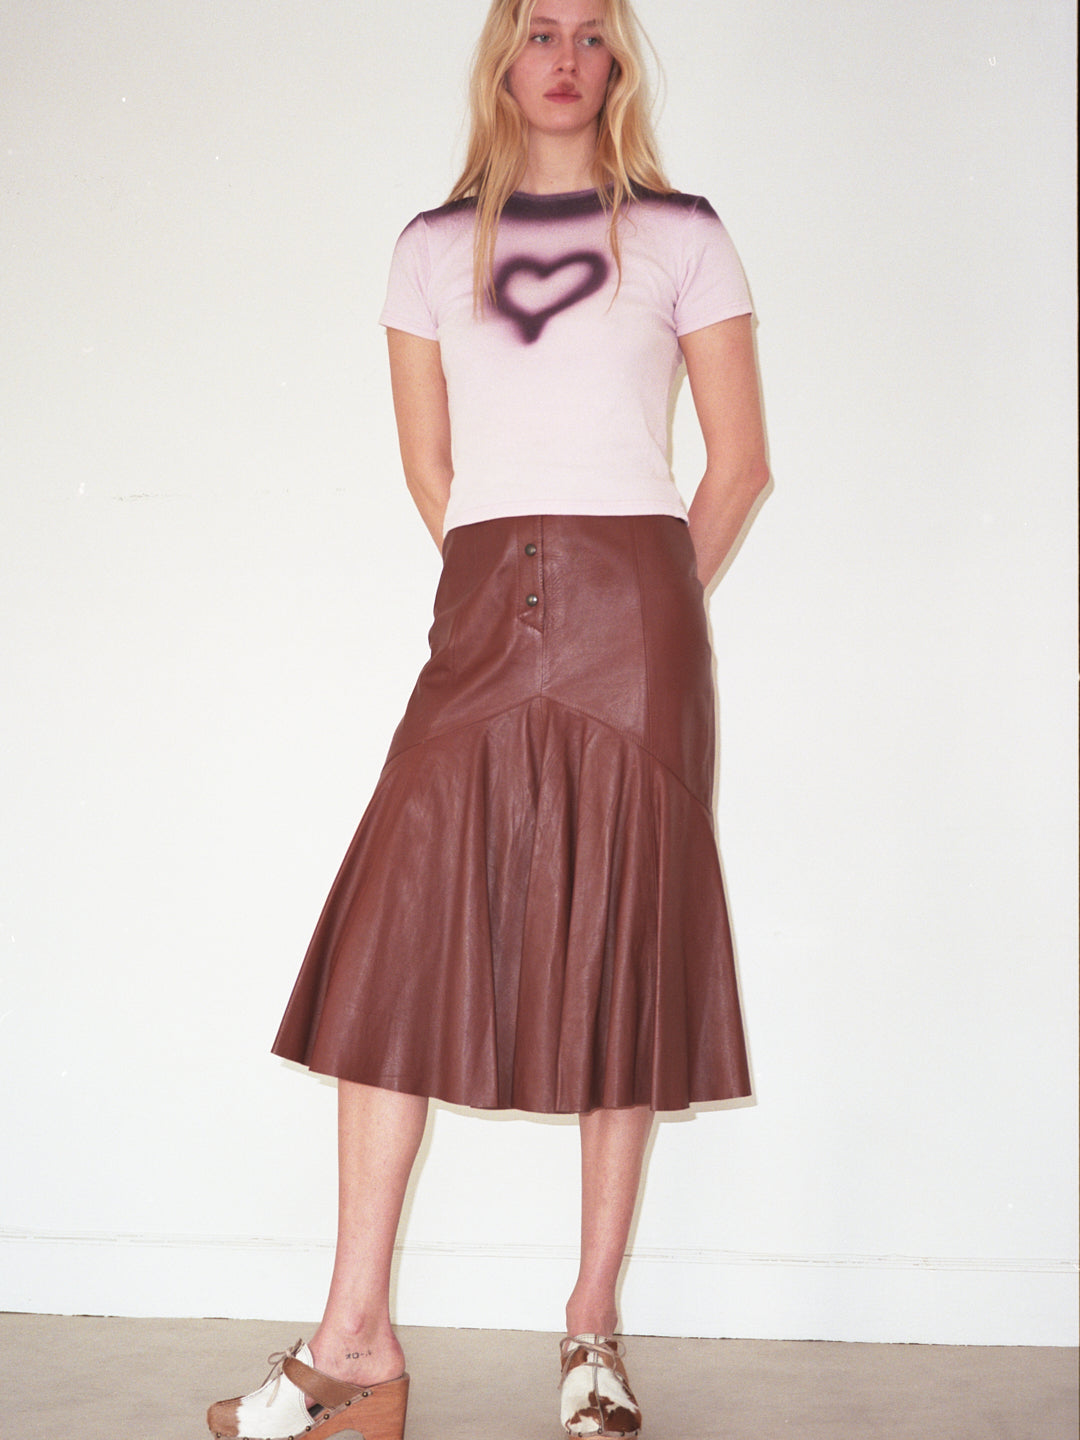 Mermaid Chocolate Leather Skirt